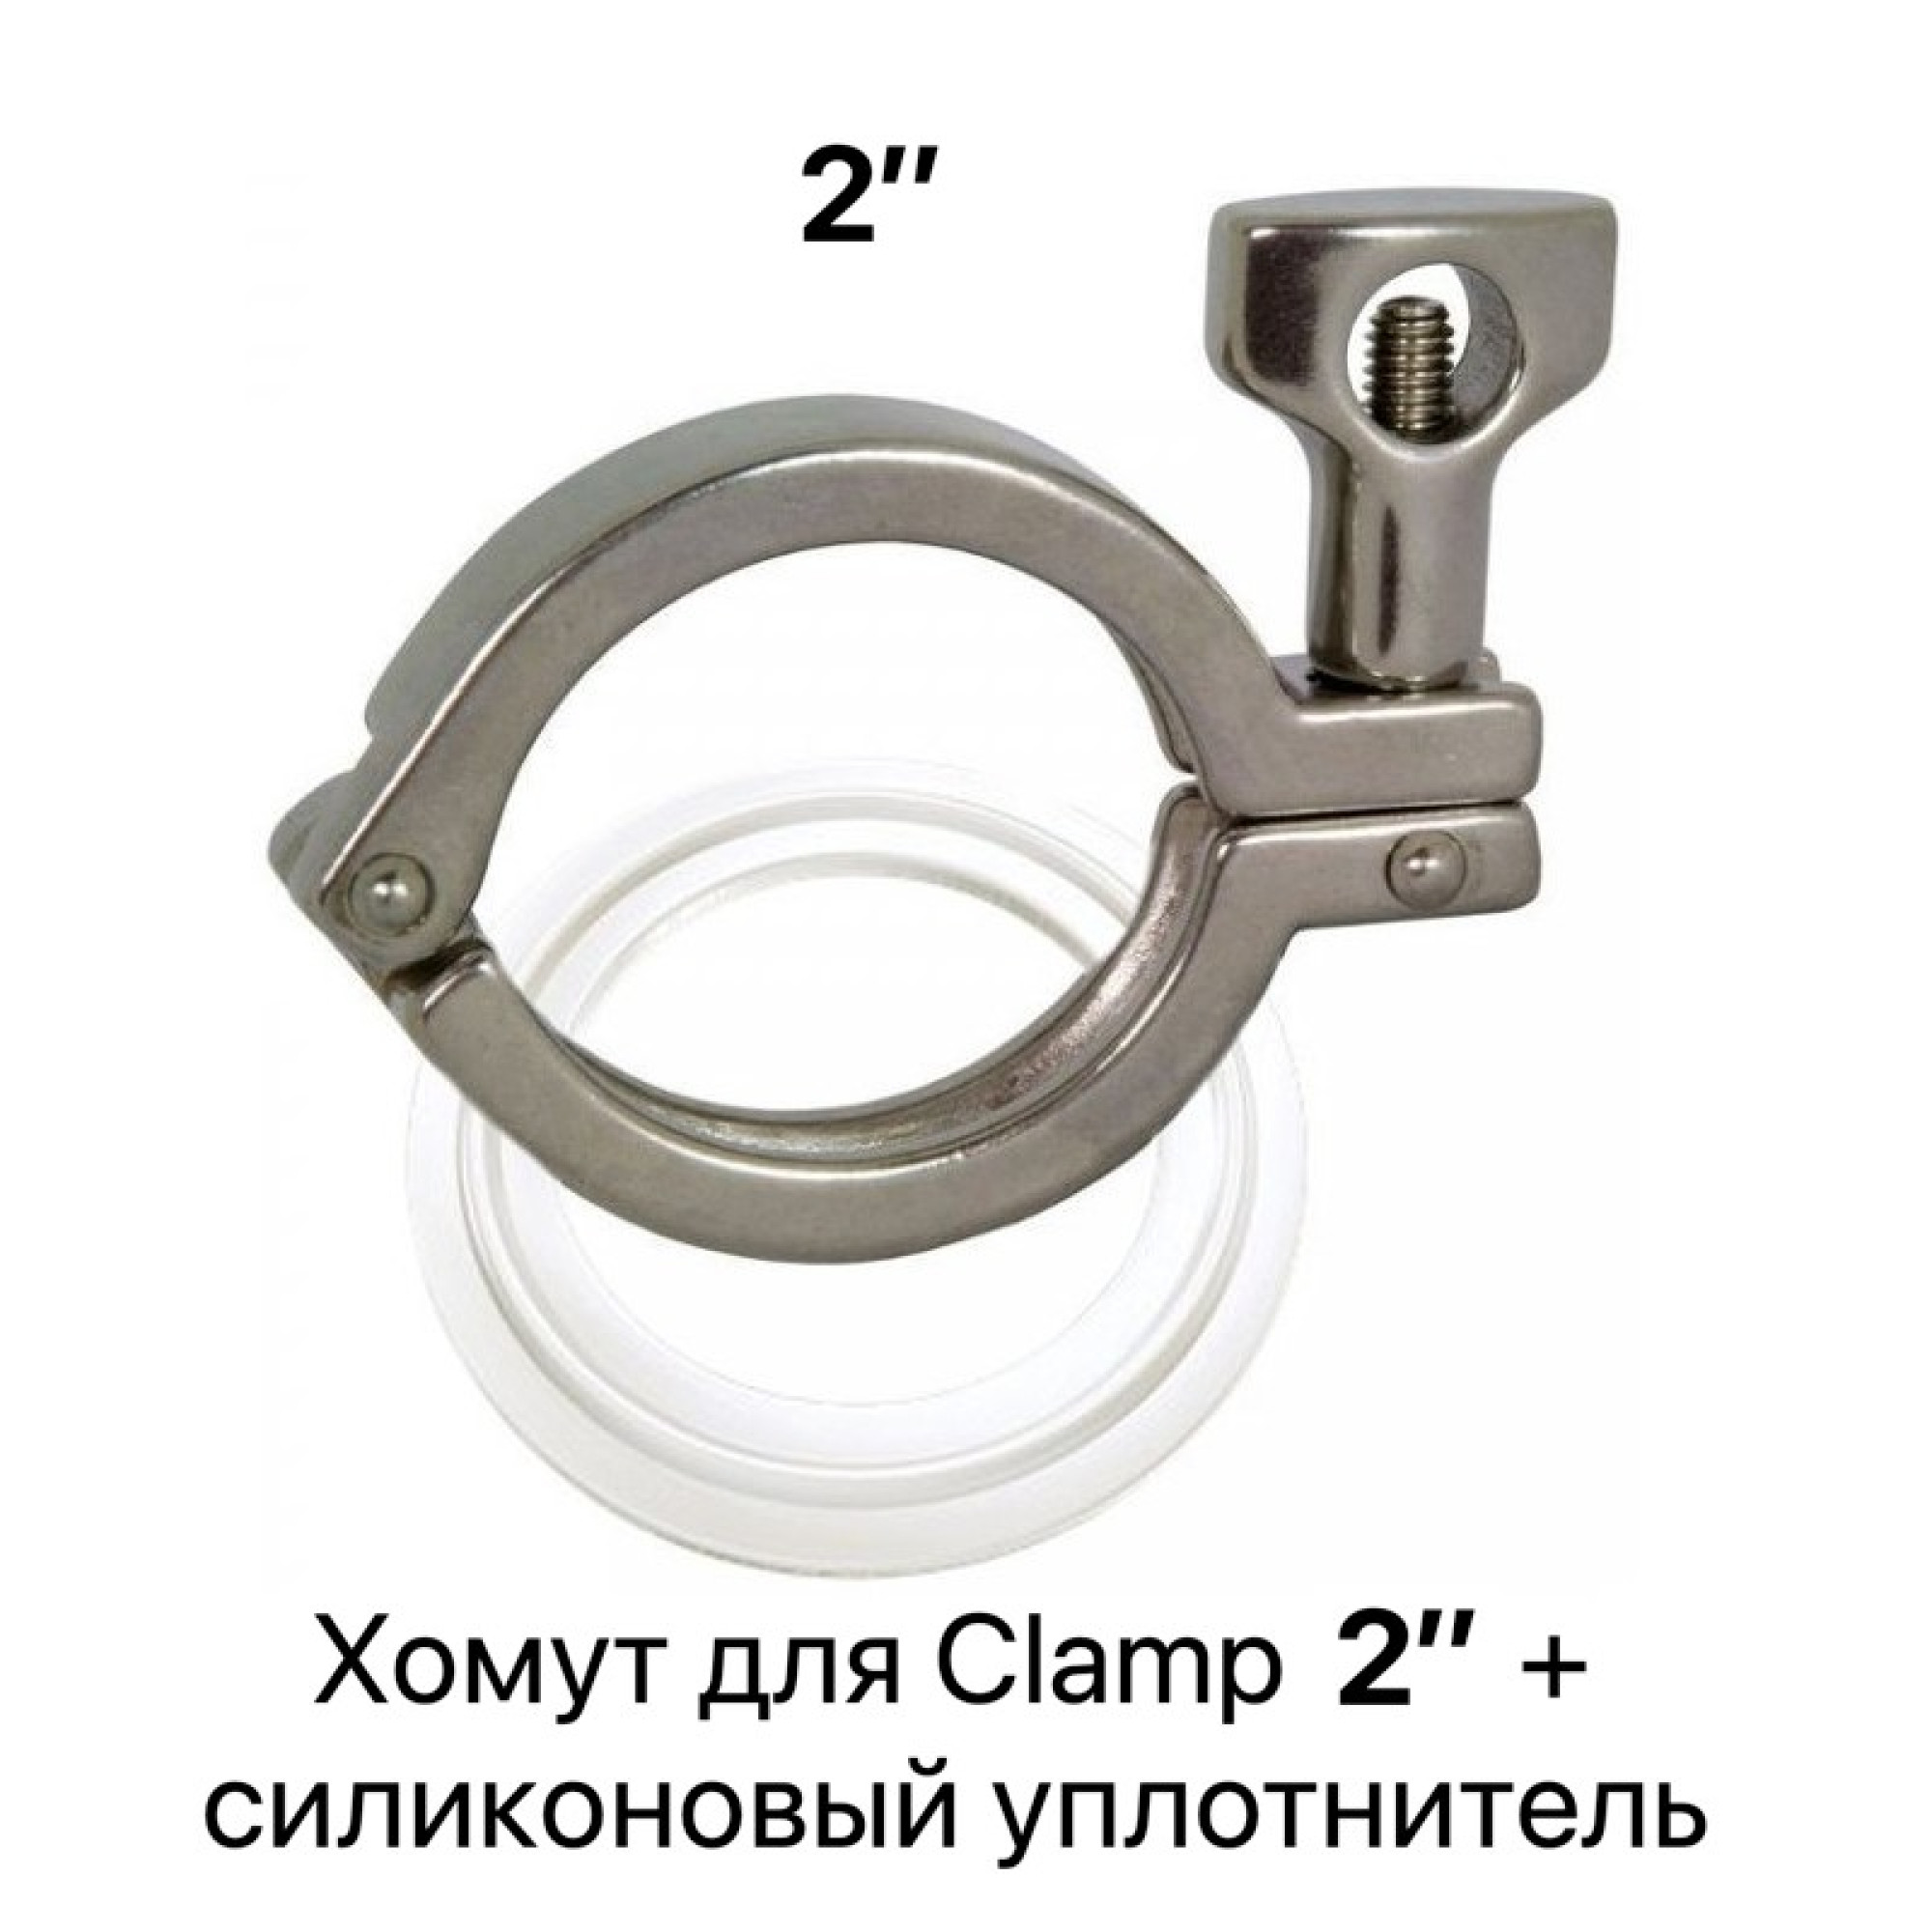   Хомут для Clamp соединения 2 дюйма с уплотнителем  - фото